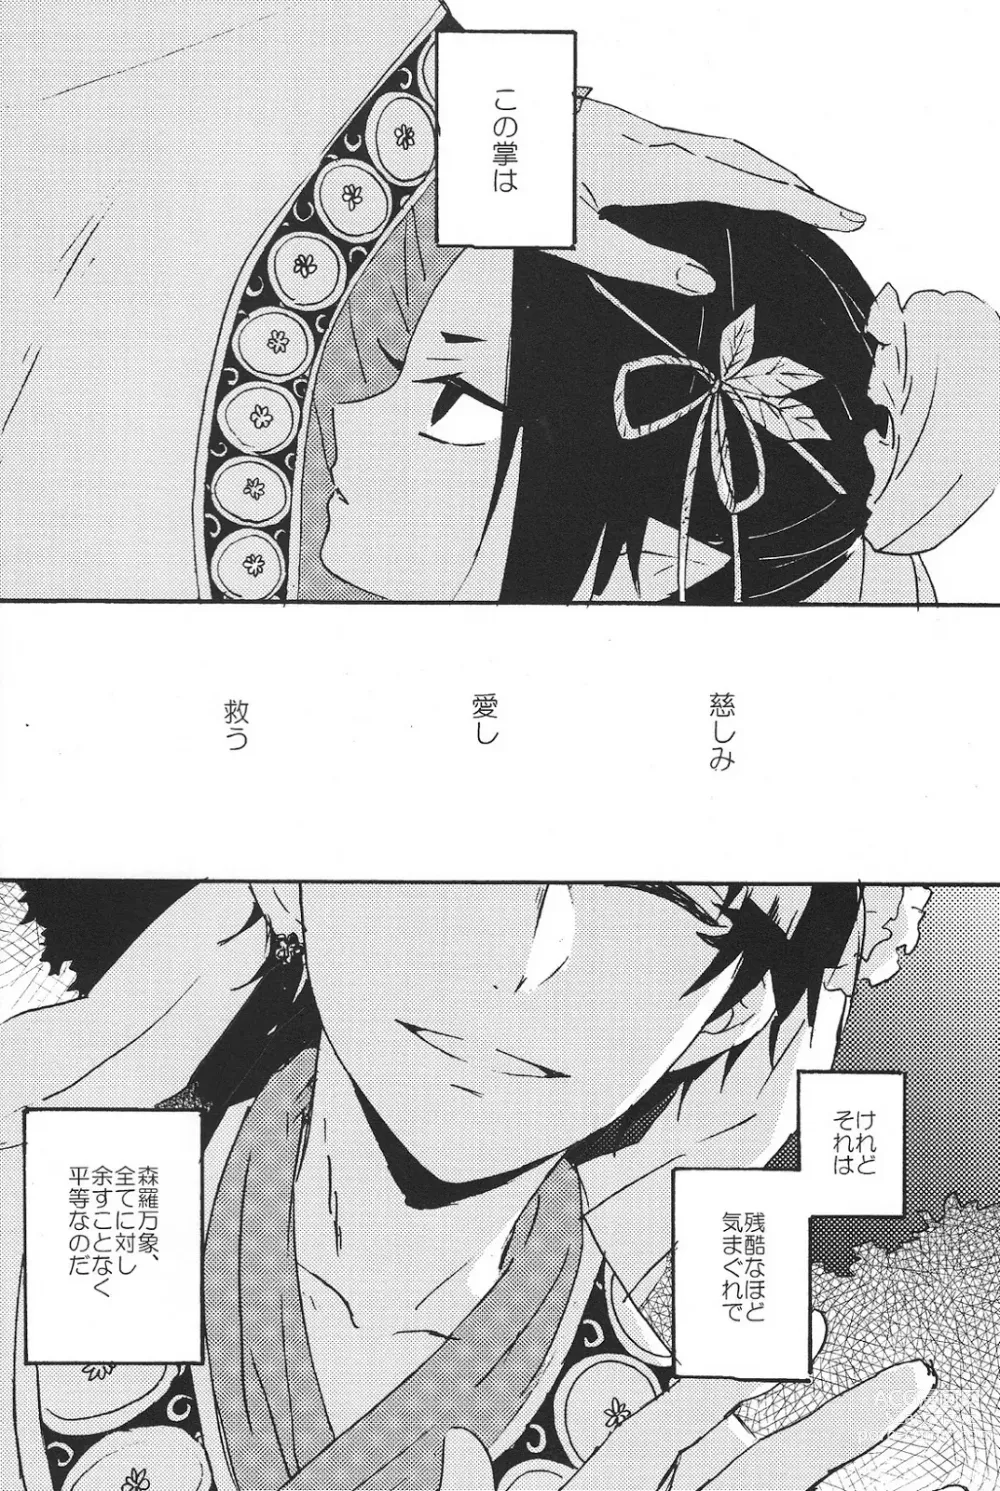 Page 3 of doujinshi Hikkakikizu